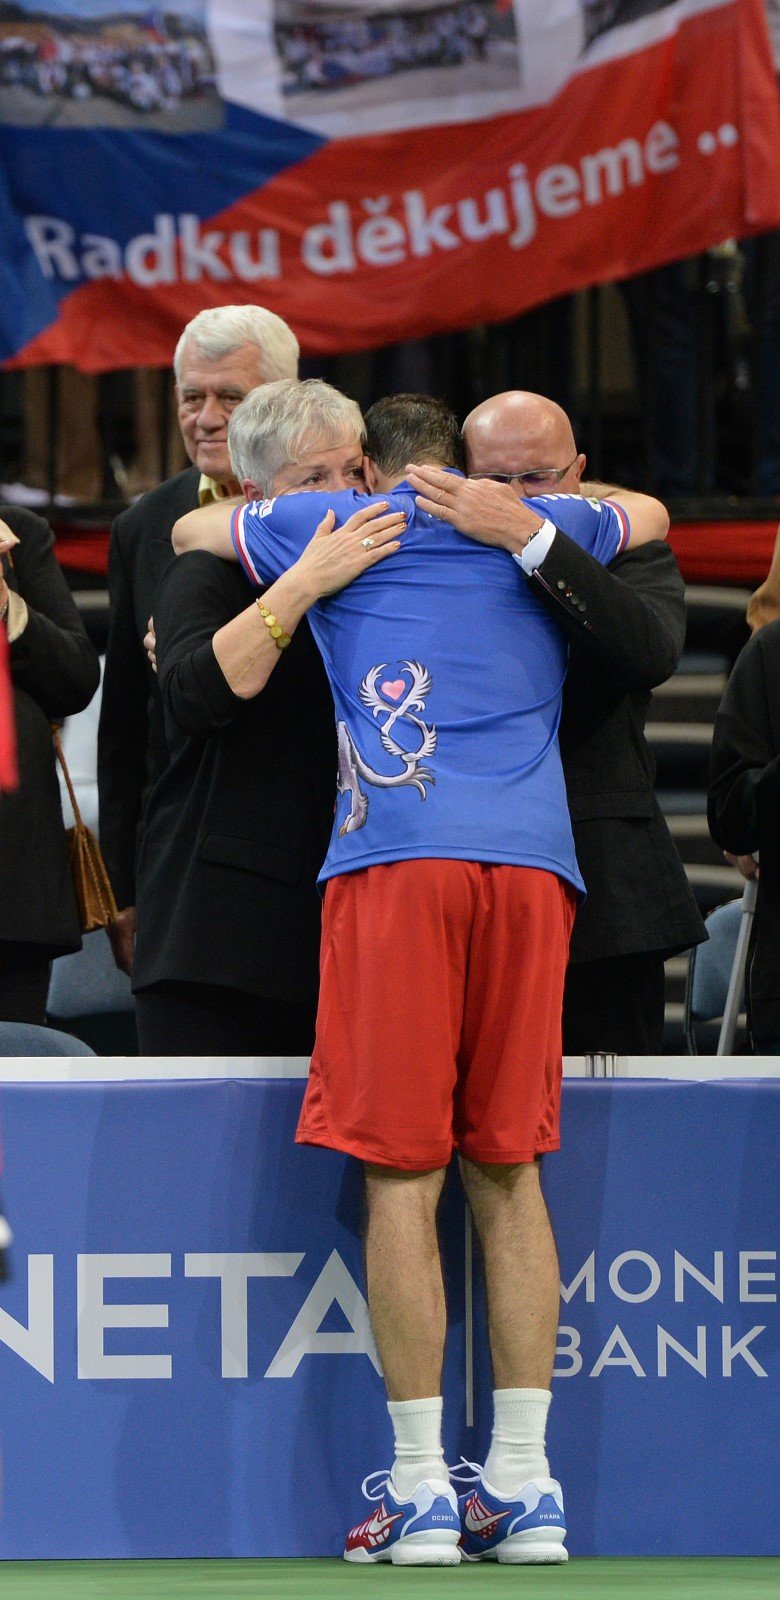 Po rozlučce nemohlo chybět objetí s rodiči, kterým během utkání s Novakem Djokovičem věnoval Radek Štěpánek samostatný proslov